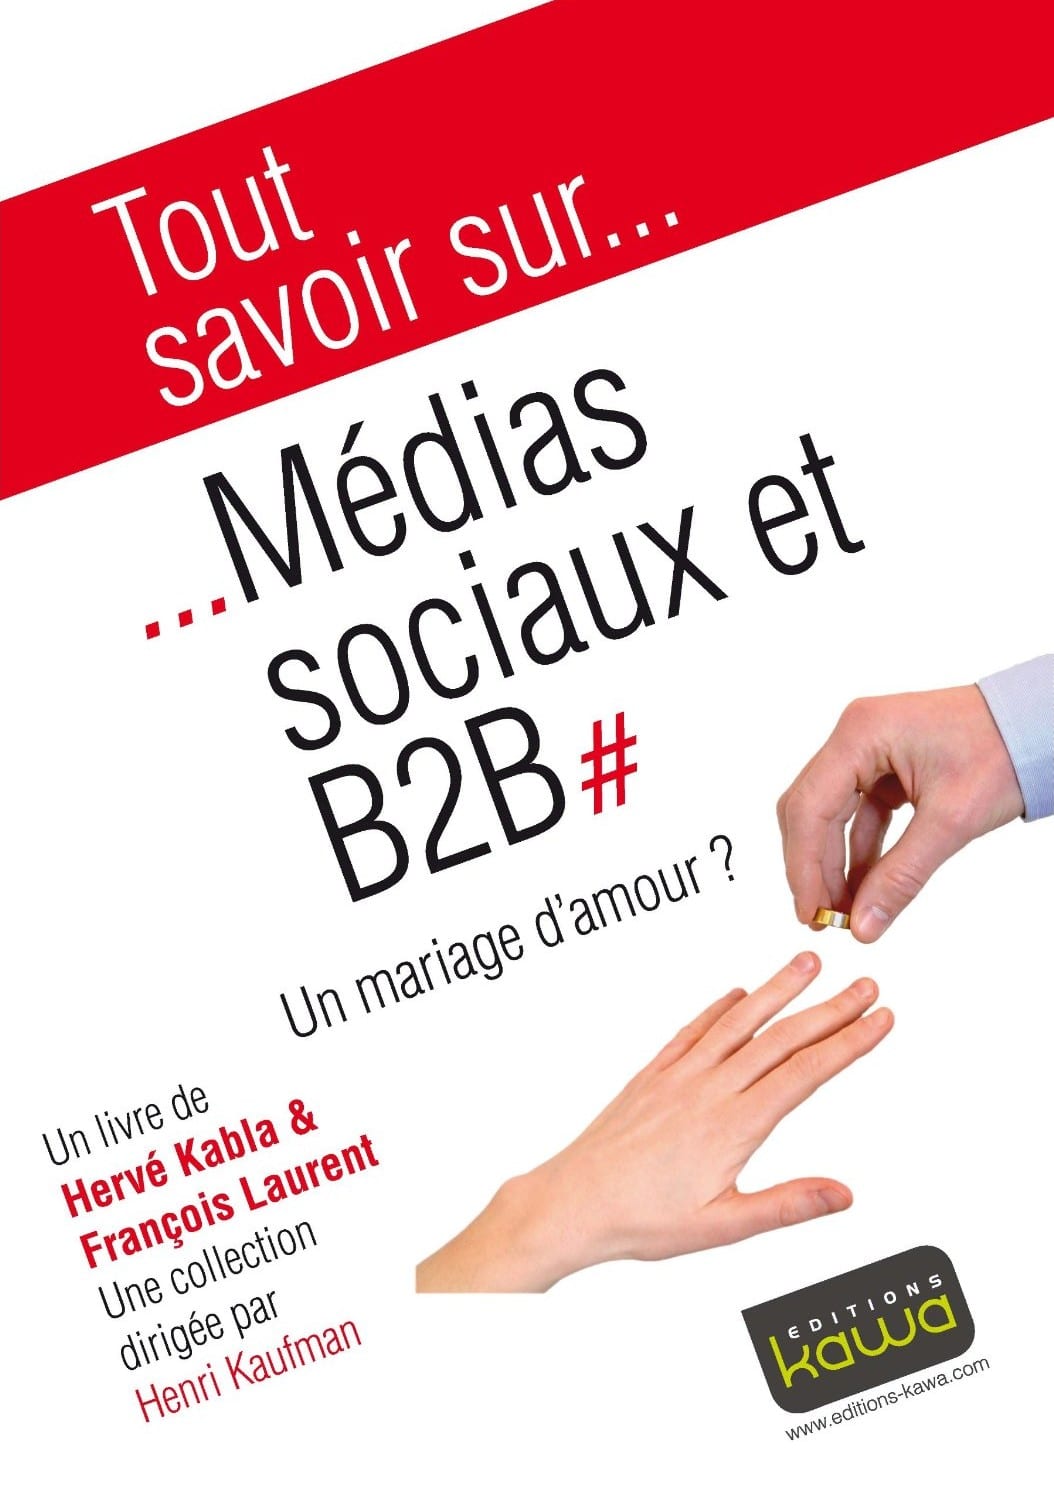 Media Sociaux et B2B, un mariage d'amour ? - Emilie Ogez, Hervé Kabla et Franck Rosenthal 7